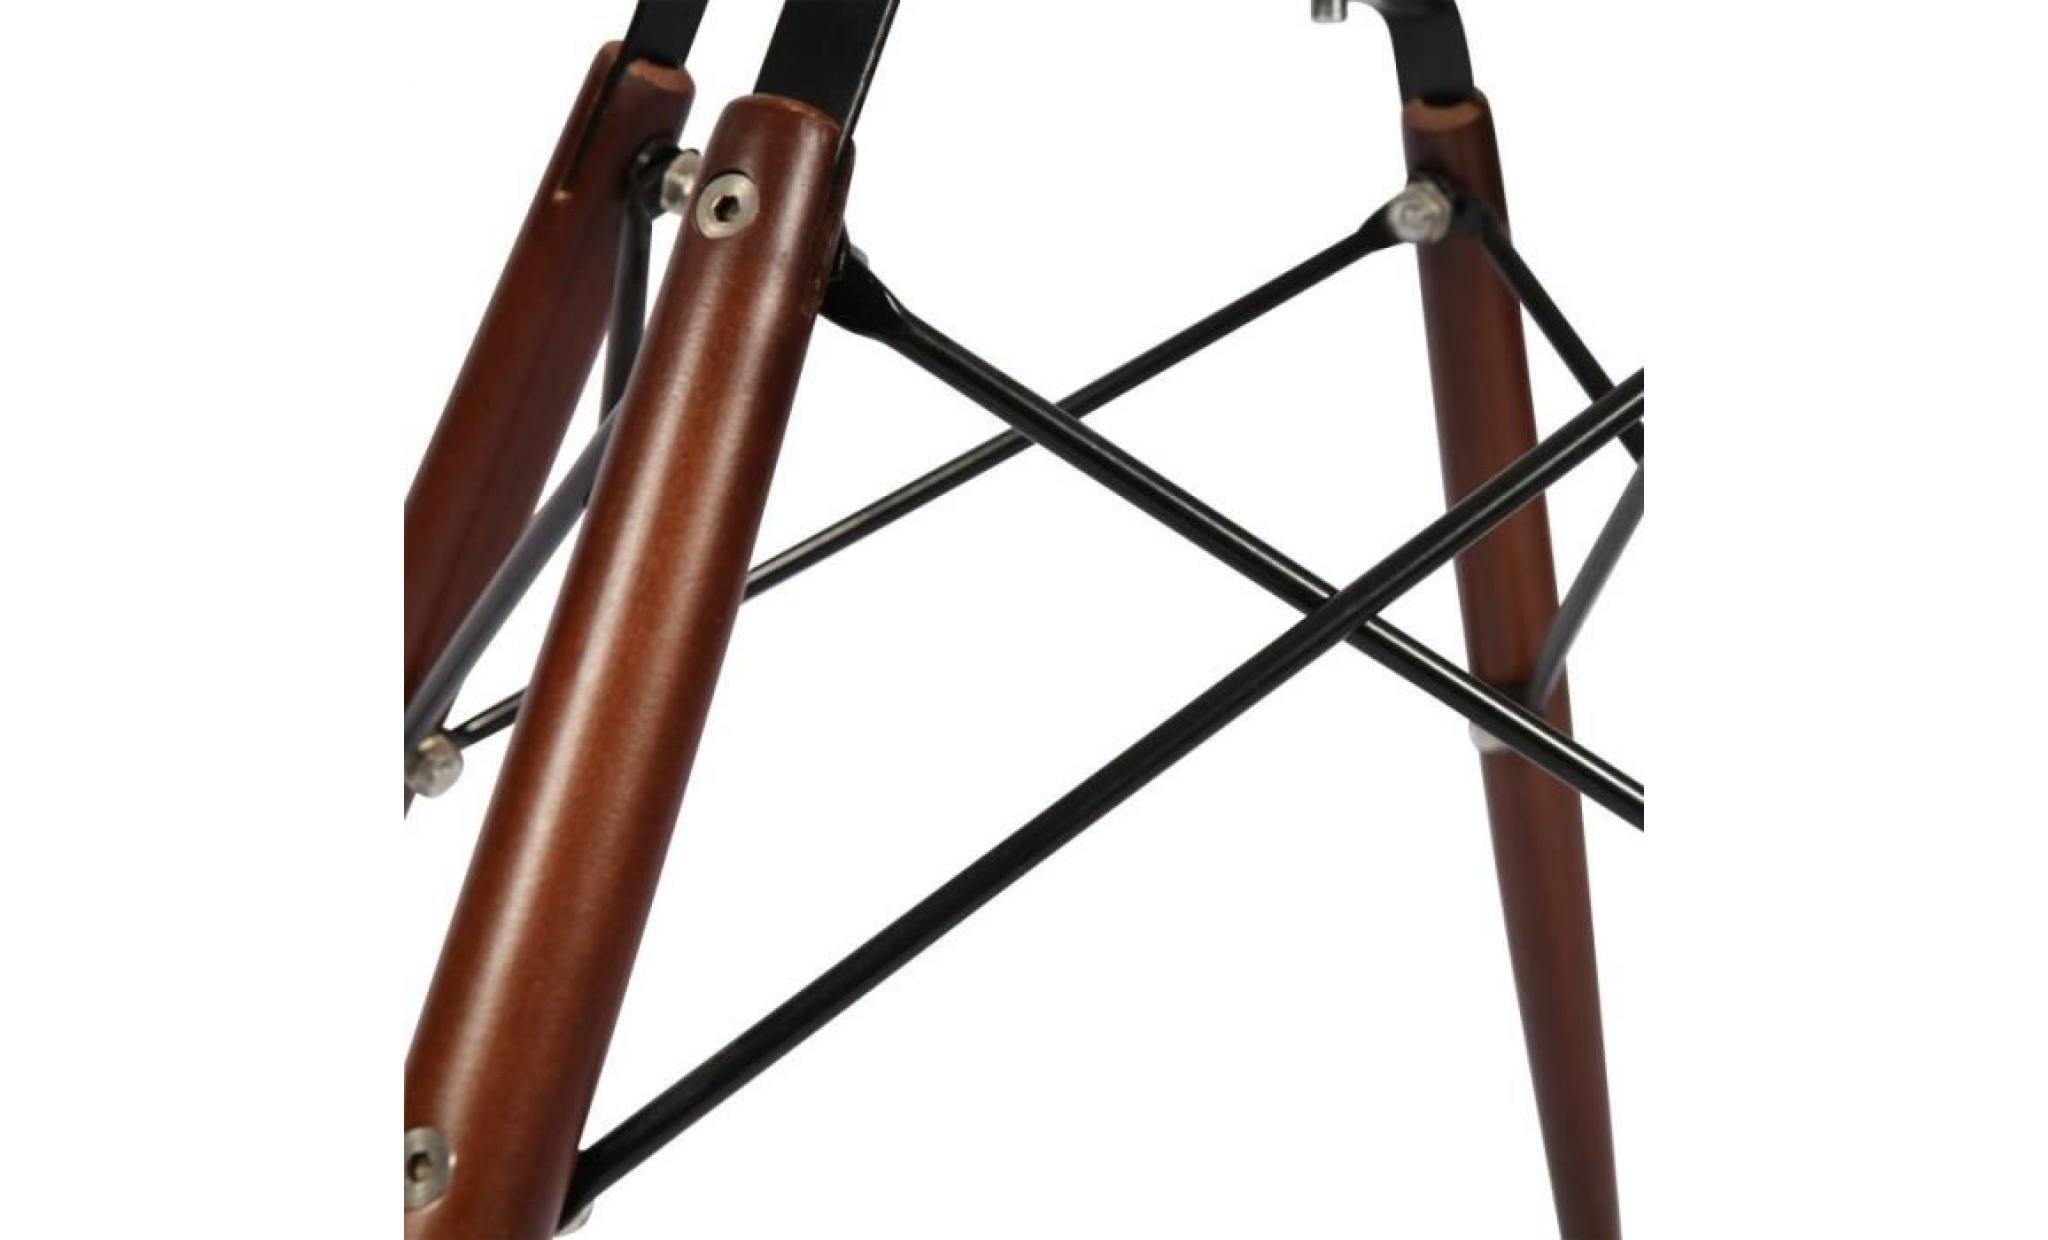 1 x fauteuil design retro style charles eames daw hauteur 48cm pieds en bois naturel vert mobistyl® pas cher